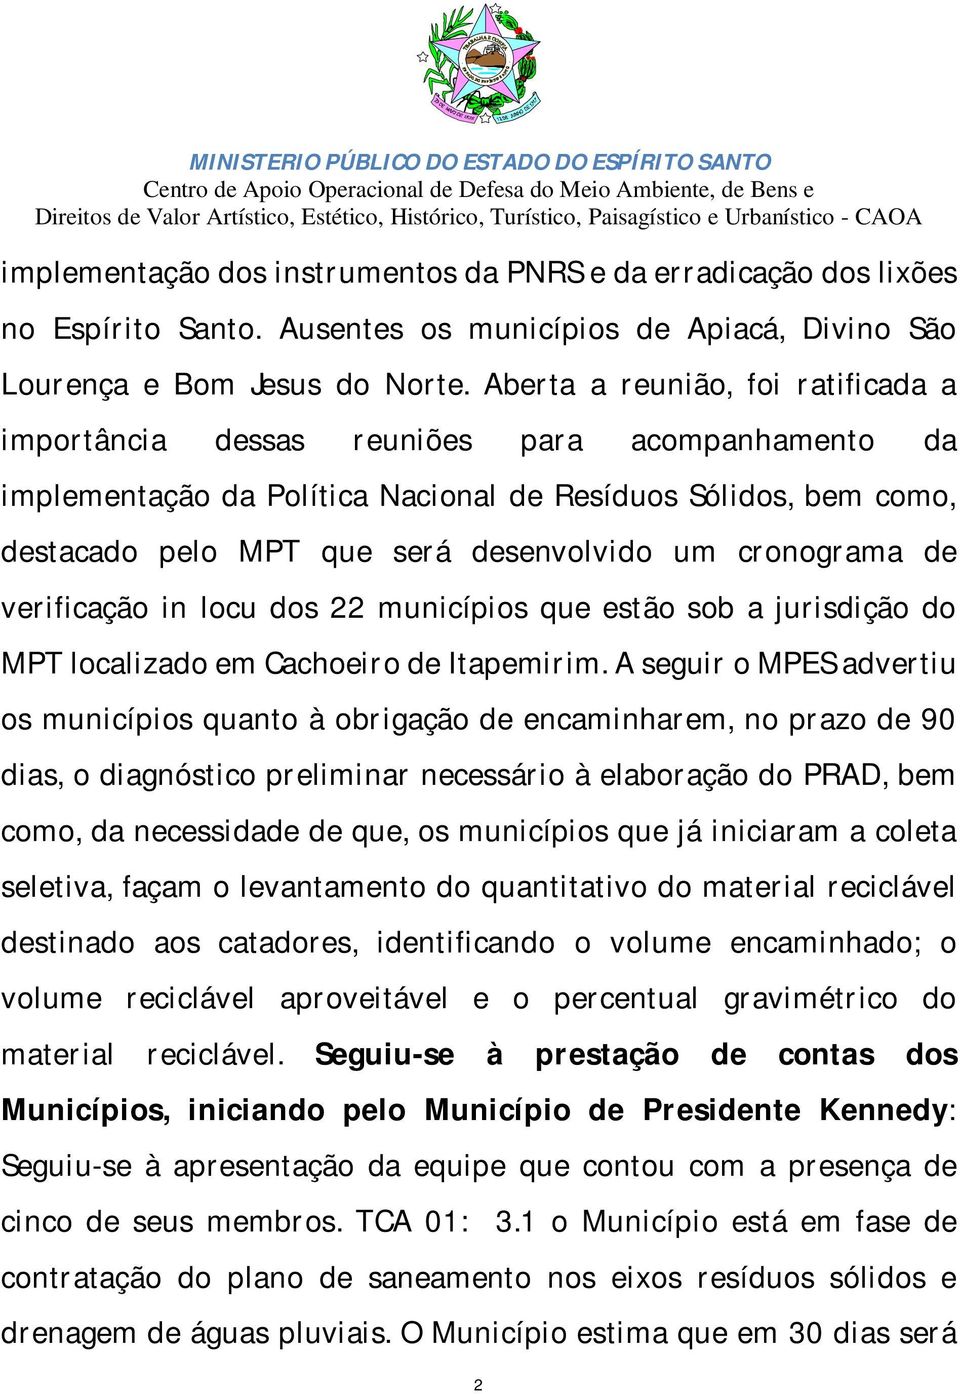 cronograma de verificação in locu dos 22 municípios que estão sob a jurisdição do MPT localizado em Cachoeiro de Itapemirim.